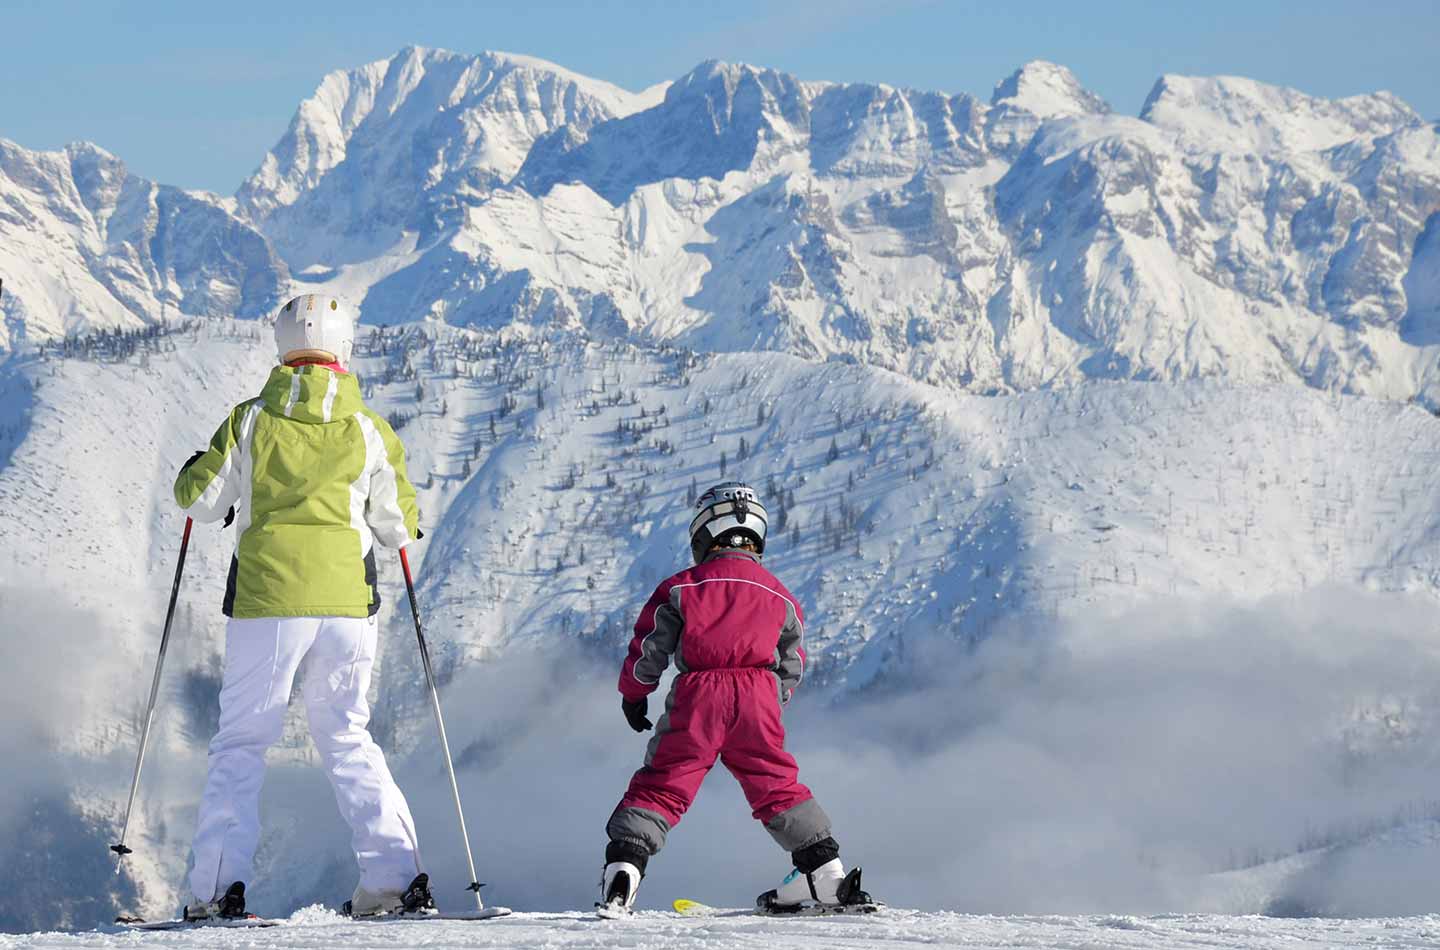 Erwachsene Person mit Kind in Begleitung auf Skiern am Berg